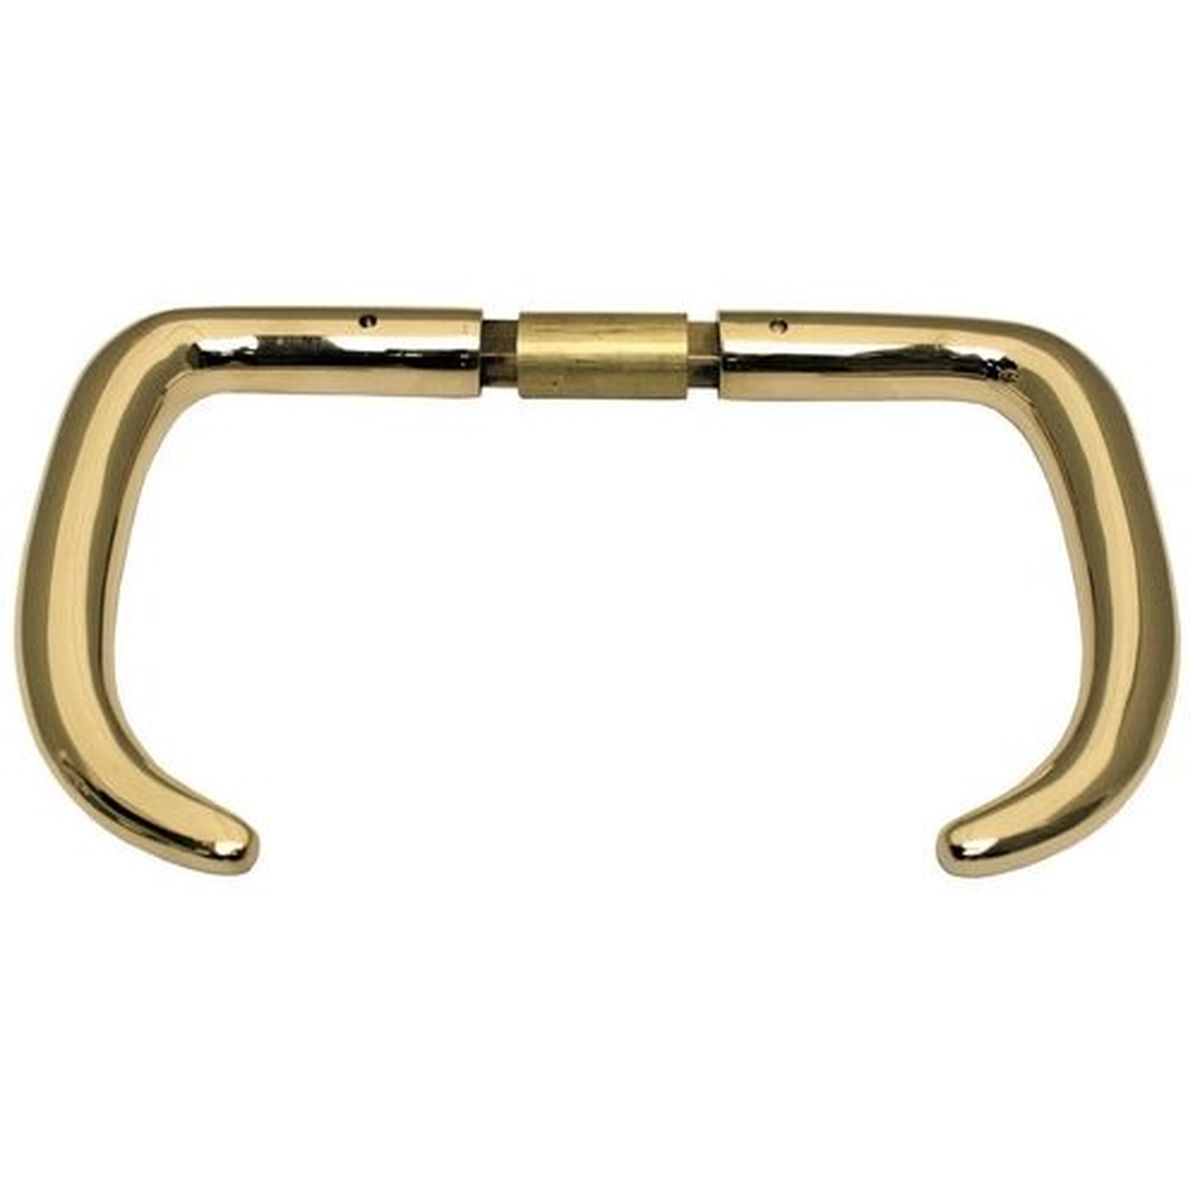 Brass Door handle set for rim locks 9mm spindle for doors 32-43 mm